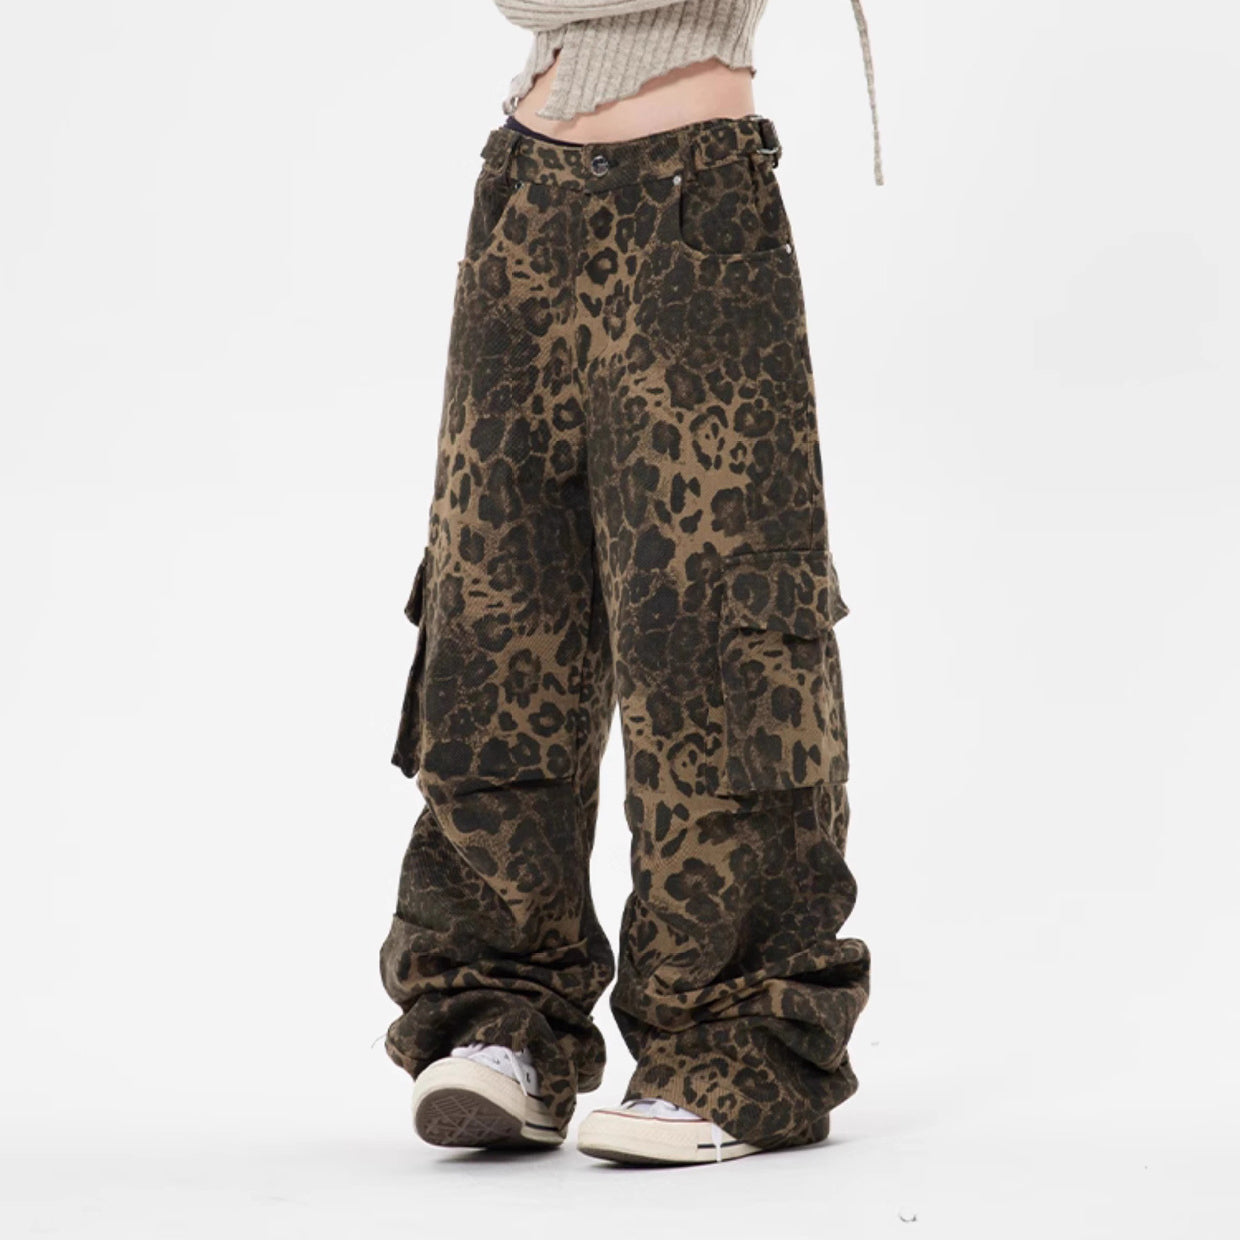 Pantalones Retro de Estampado de Leopardo para Mujer y Hombre